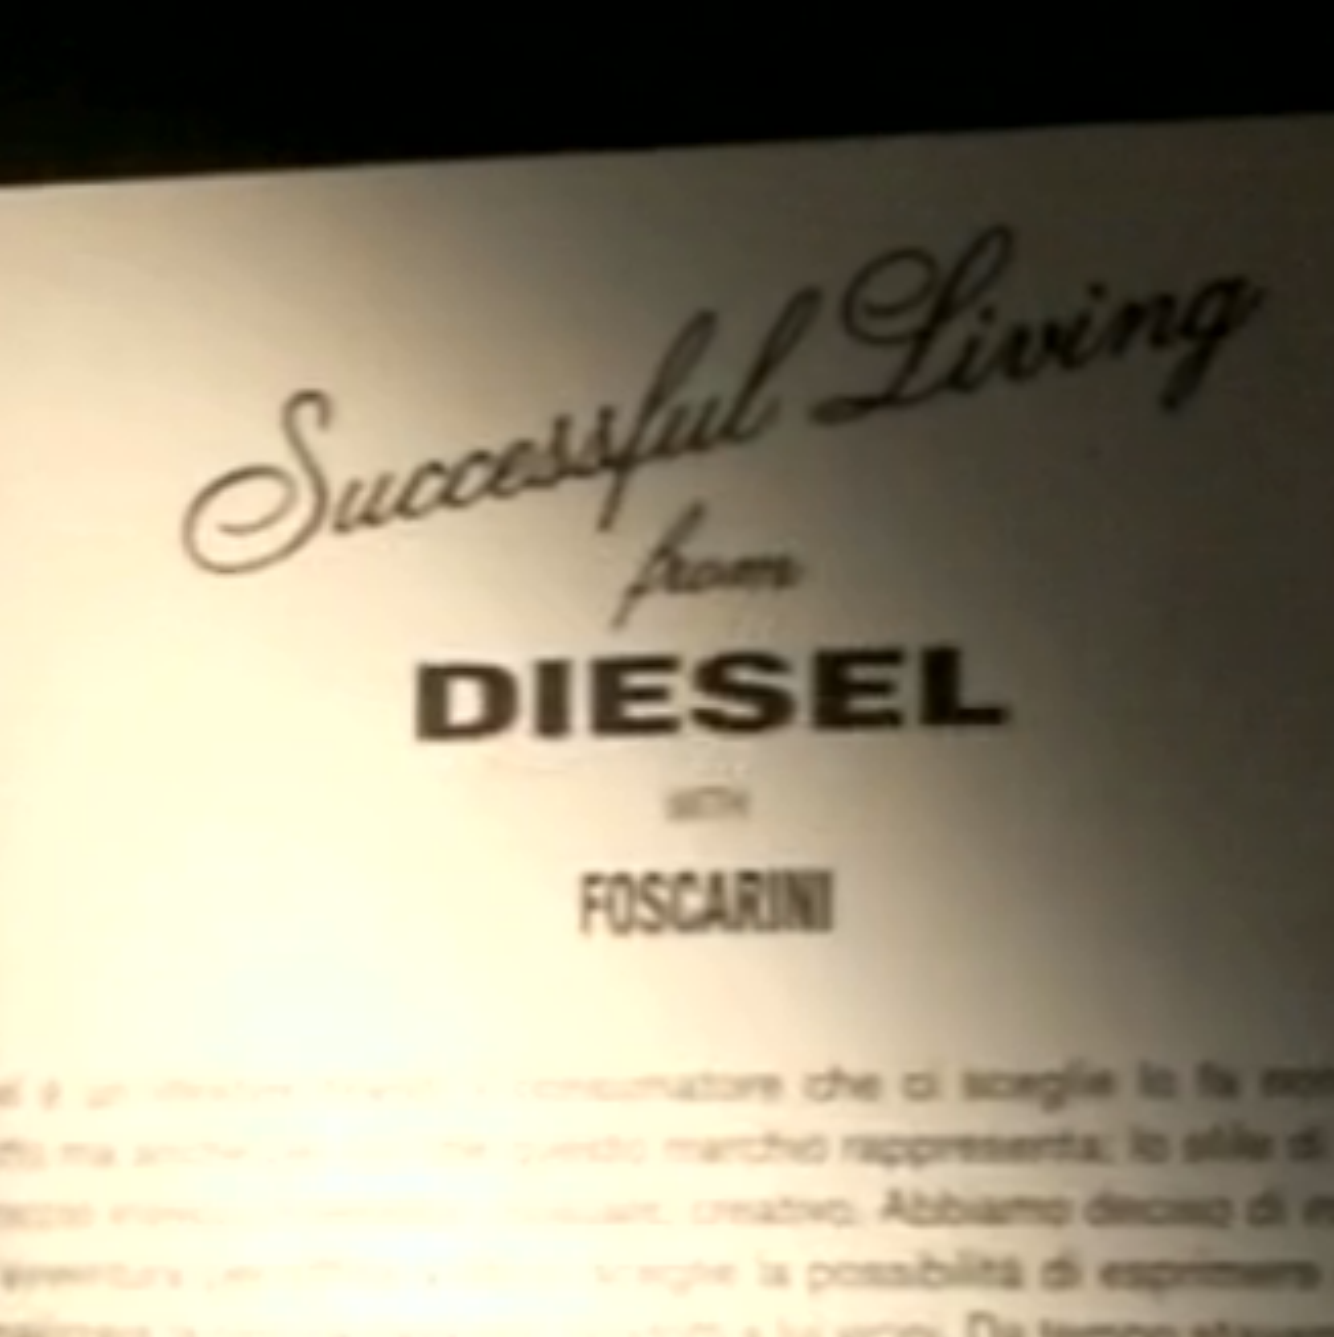 Foscarini Diesel @ Euroluce 2009